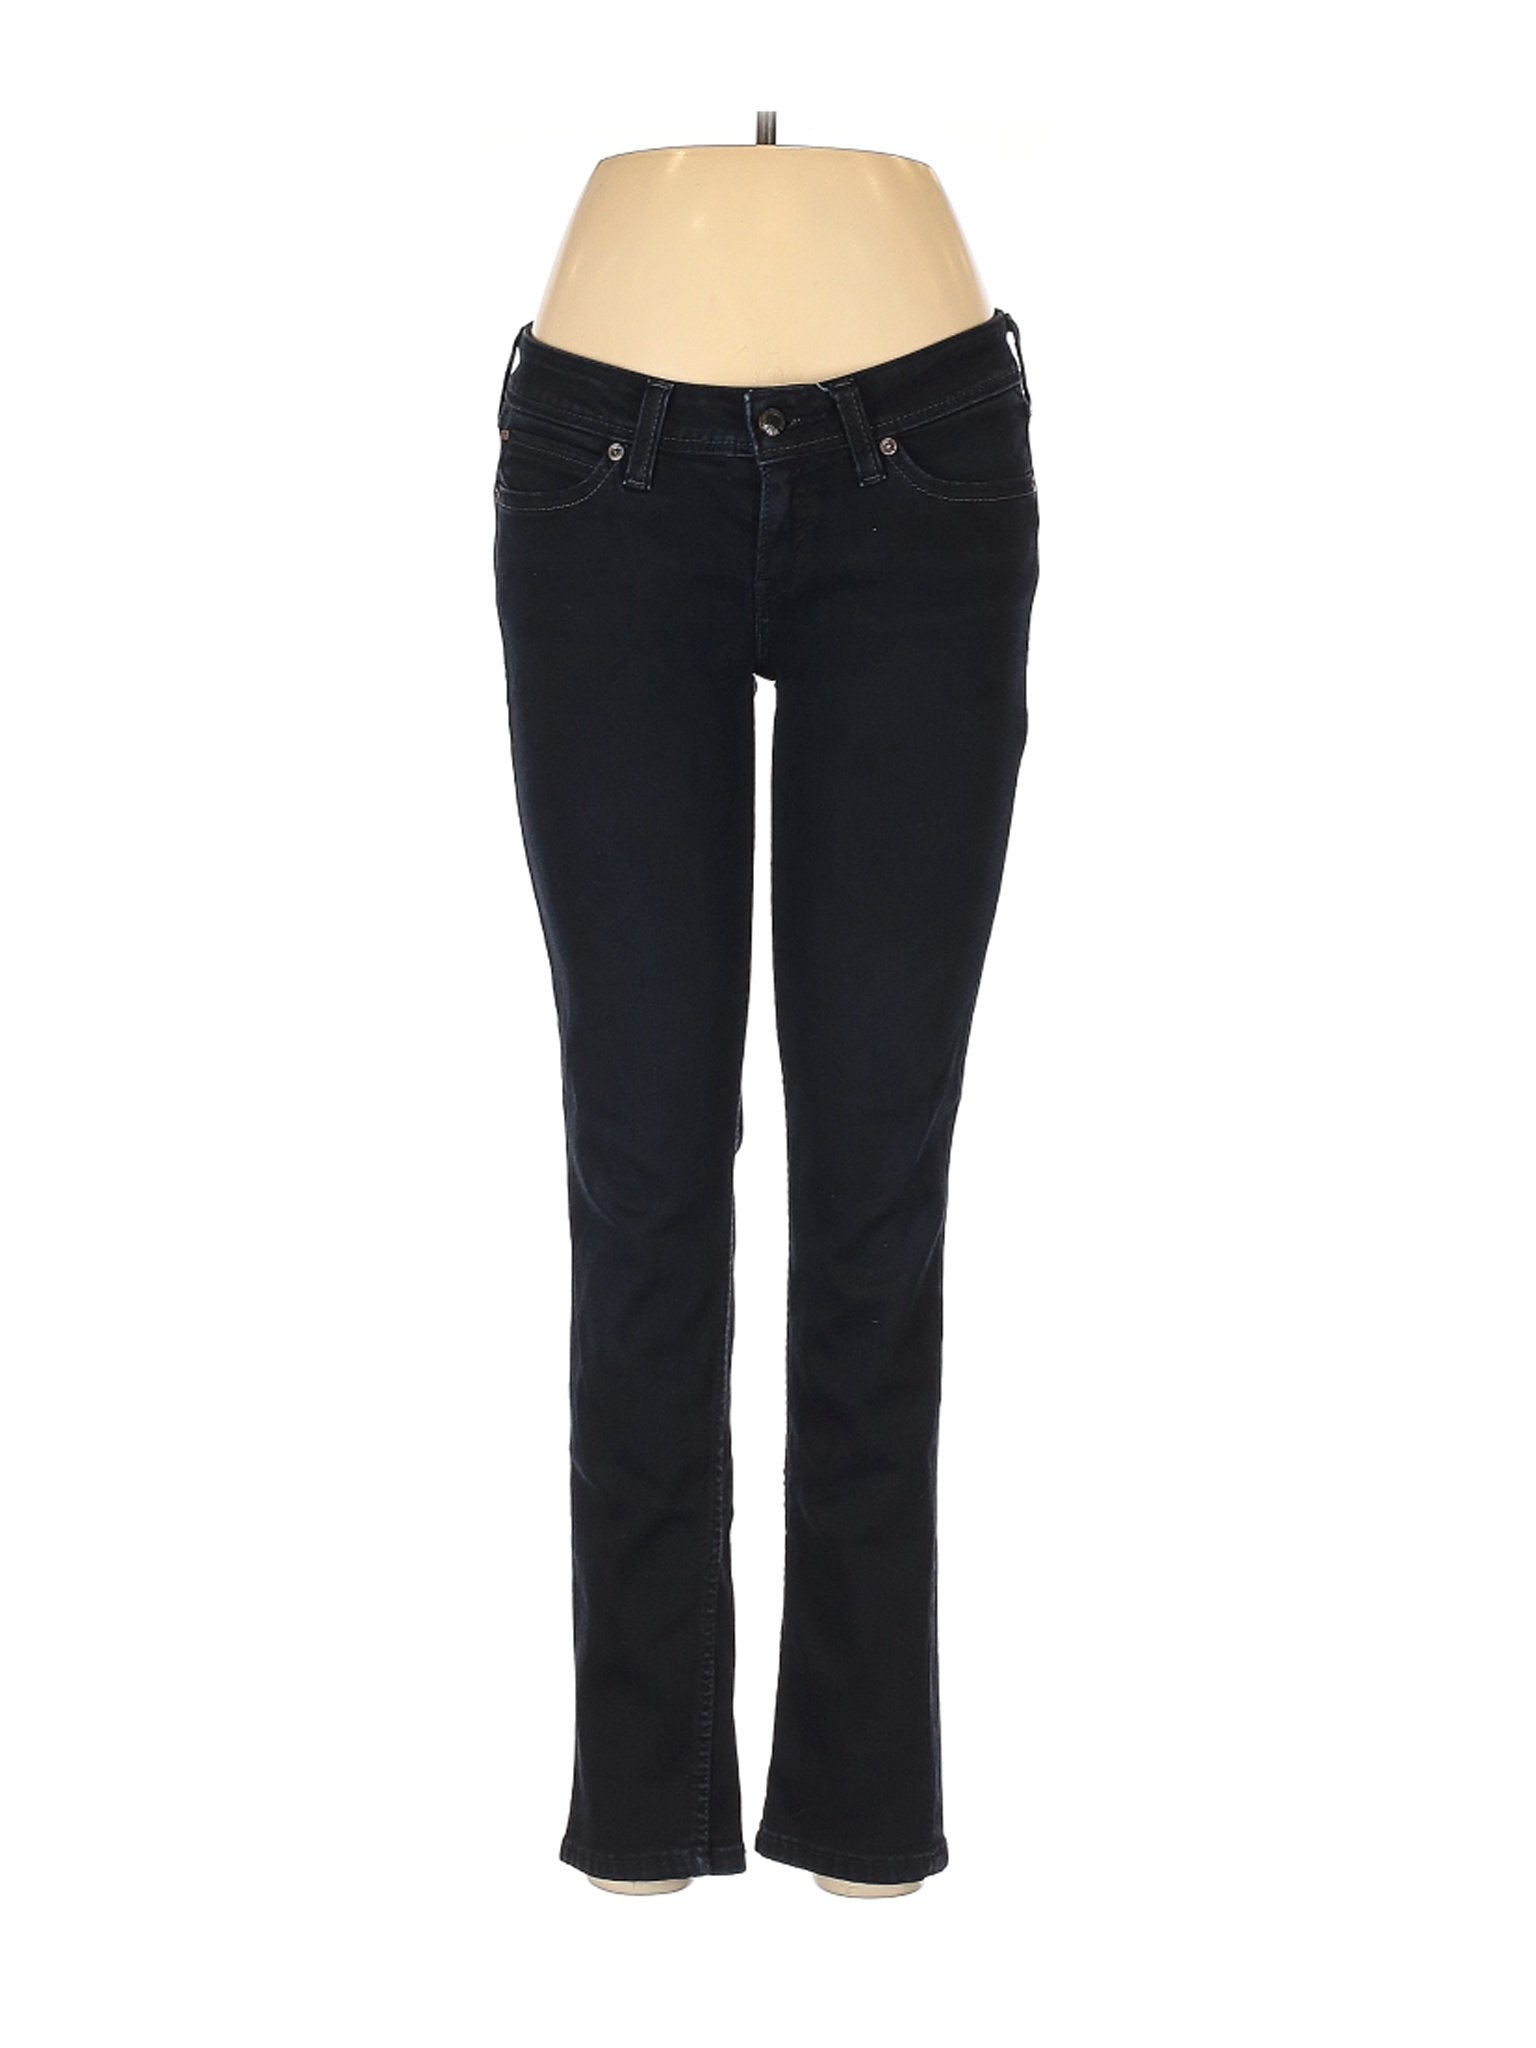 Levi's Women Black Jeans 28W | eBay